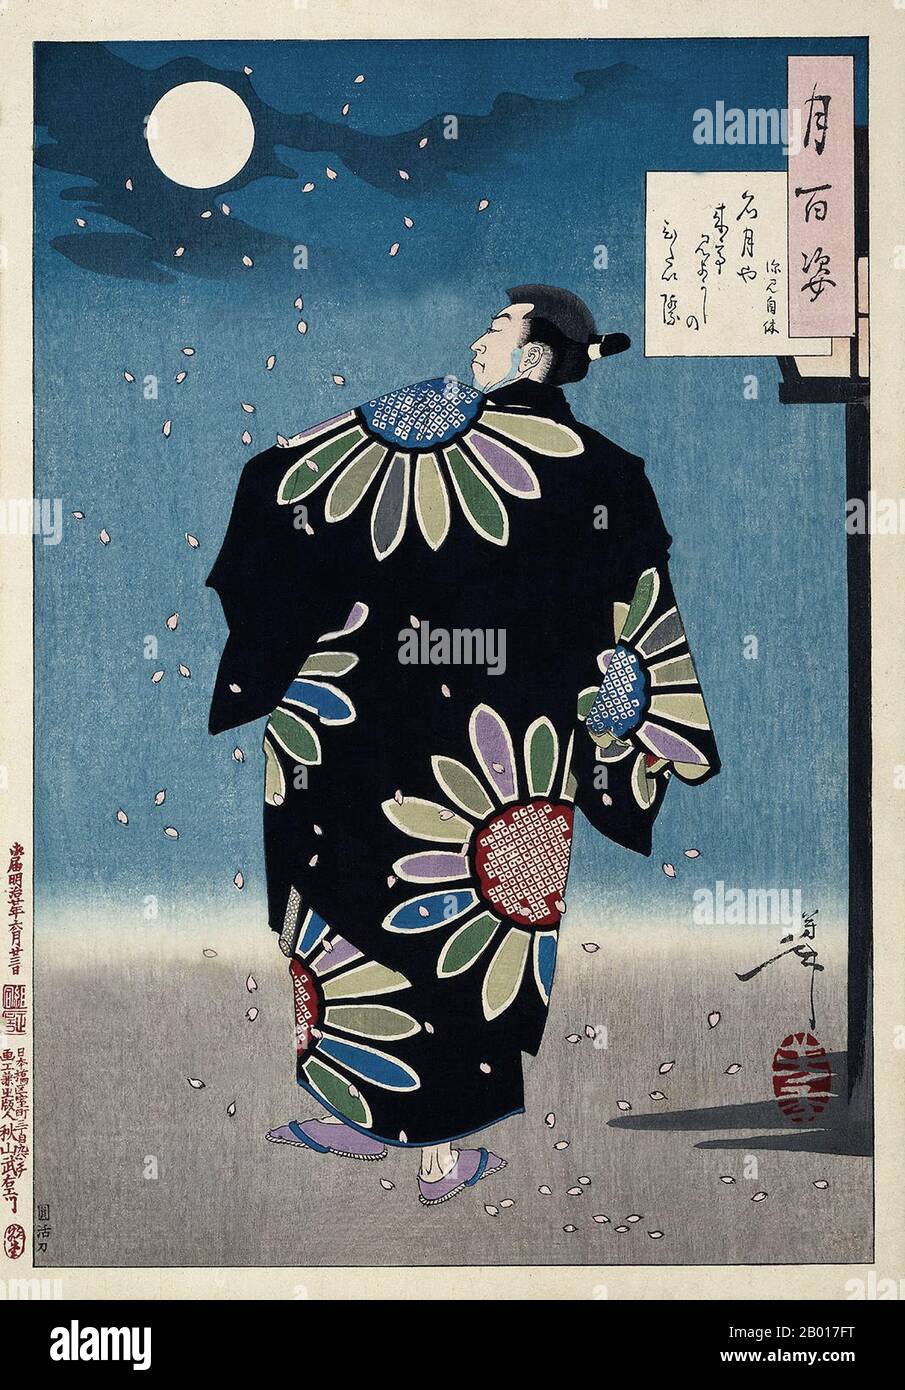 Giappone: 'Fukami Jikyu'. Ukiyo-e stampa a blocchi della serie 'cento aspetti della Luna' di Tsukioka Yoshitoshi (30 aprile 1839 - 9 giugno 1892), 1887. Fukami Jikyu, un eroe immaginario giapponese, simile in reputazione al Robin Hood inglese, cammina orgogliosamente nel suo elegante kimono mentre i fiori di ciliegia cadono intorno a lui. Yoshitoshi crea il senso di una tranquilla serata primaverile in questo legno del periodo post-Edo.- accanto alla sua firma nel cartouche in alto a destra del dipinto, Yoshitoshi ha incluso una breve poesia. Foto Stock